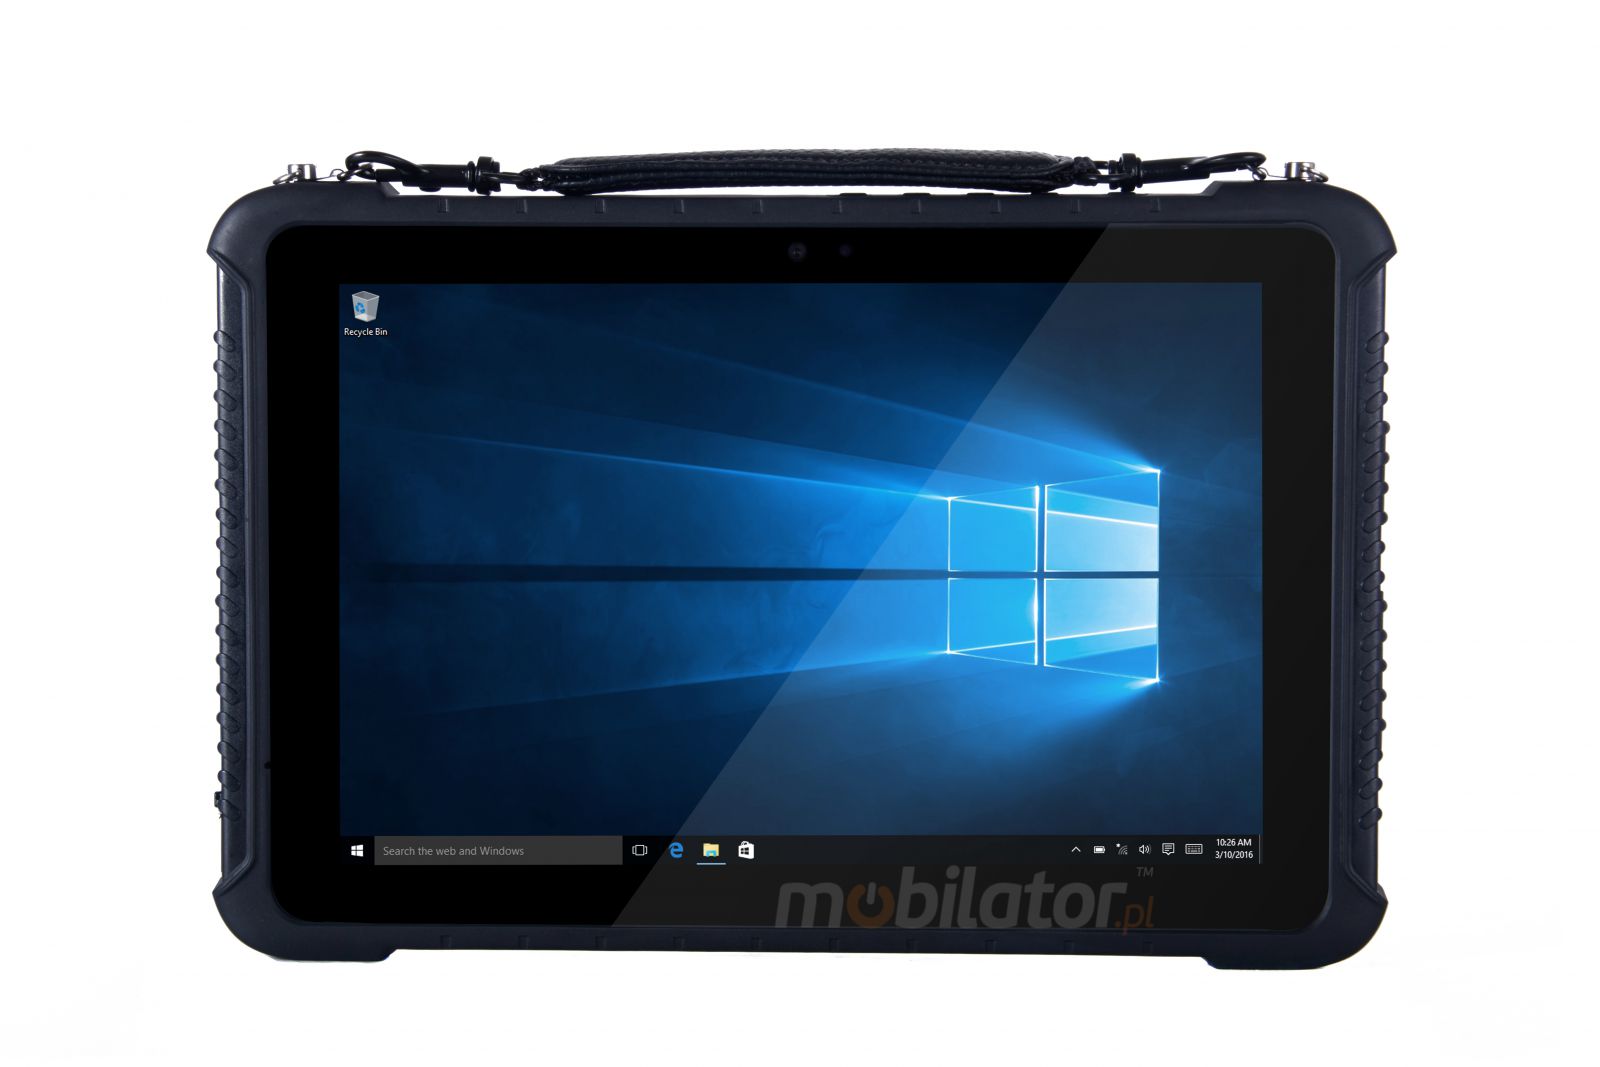 Emdoor I16K v.15 - Przemysowy, wielozadaniowy tablet z Windows 10 PRO, BT 4.2, skanerem kodw 2D, 4G, 8GB RAM pamici, dyskiem 128G SSD